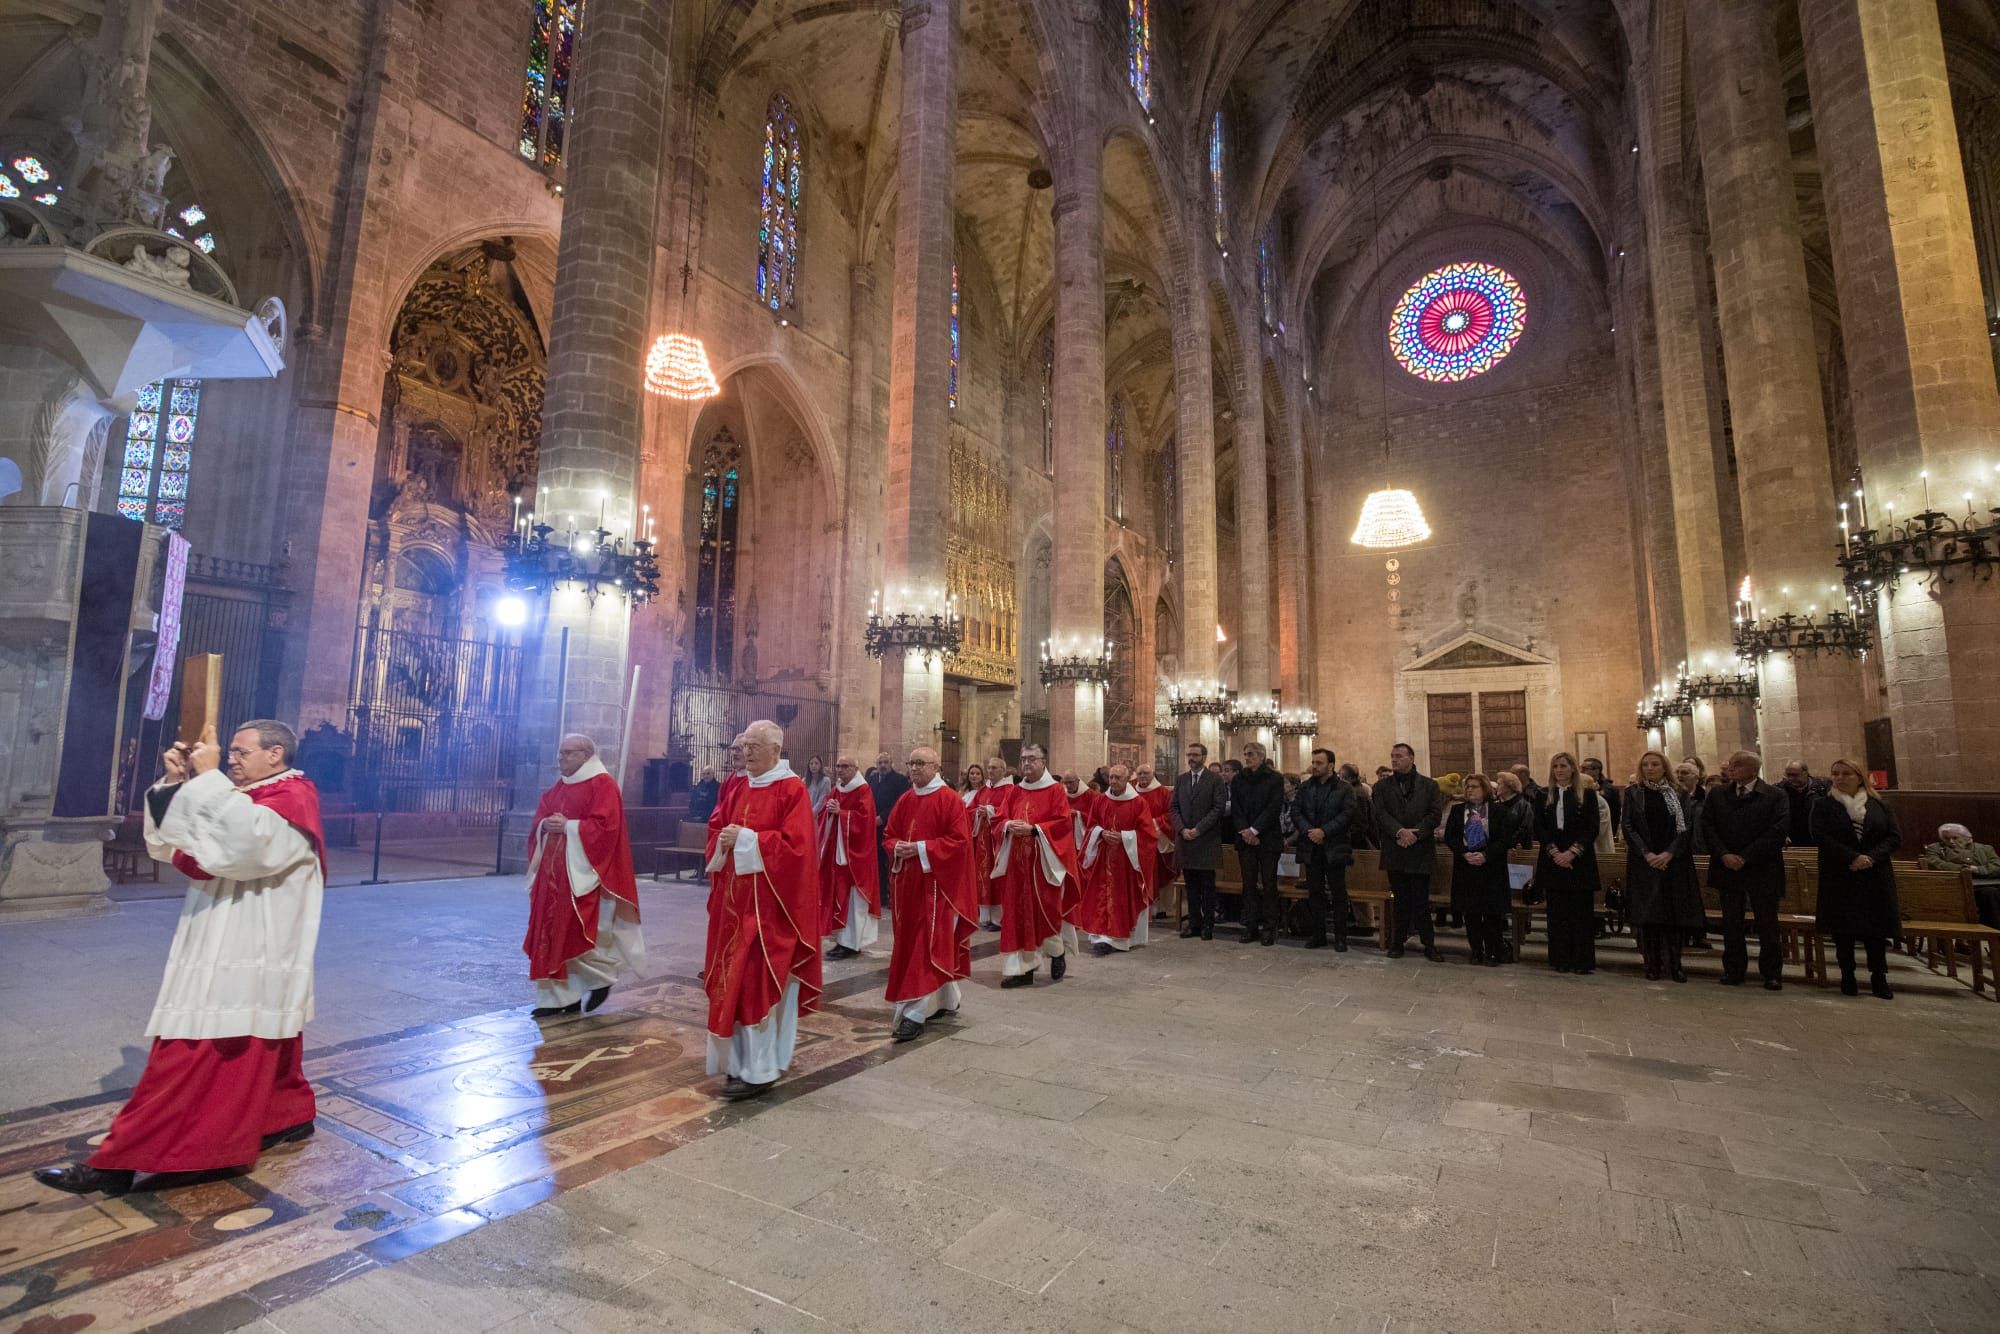 Misa de Sant Sebastià en la Seu: El obispo pide que las tradiciones sean vividas "con respeto" y como signo de una "laicidad bien entendida"